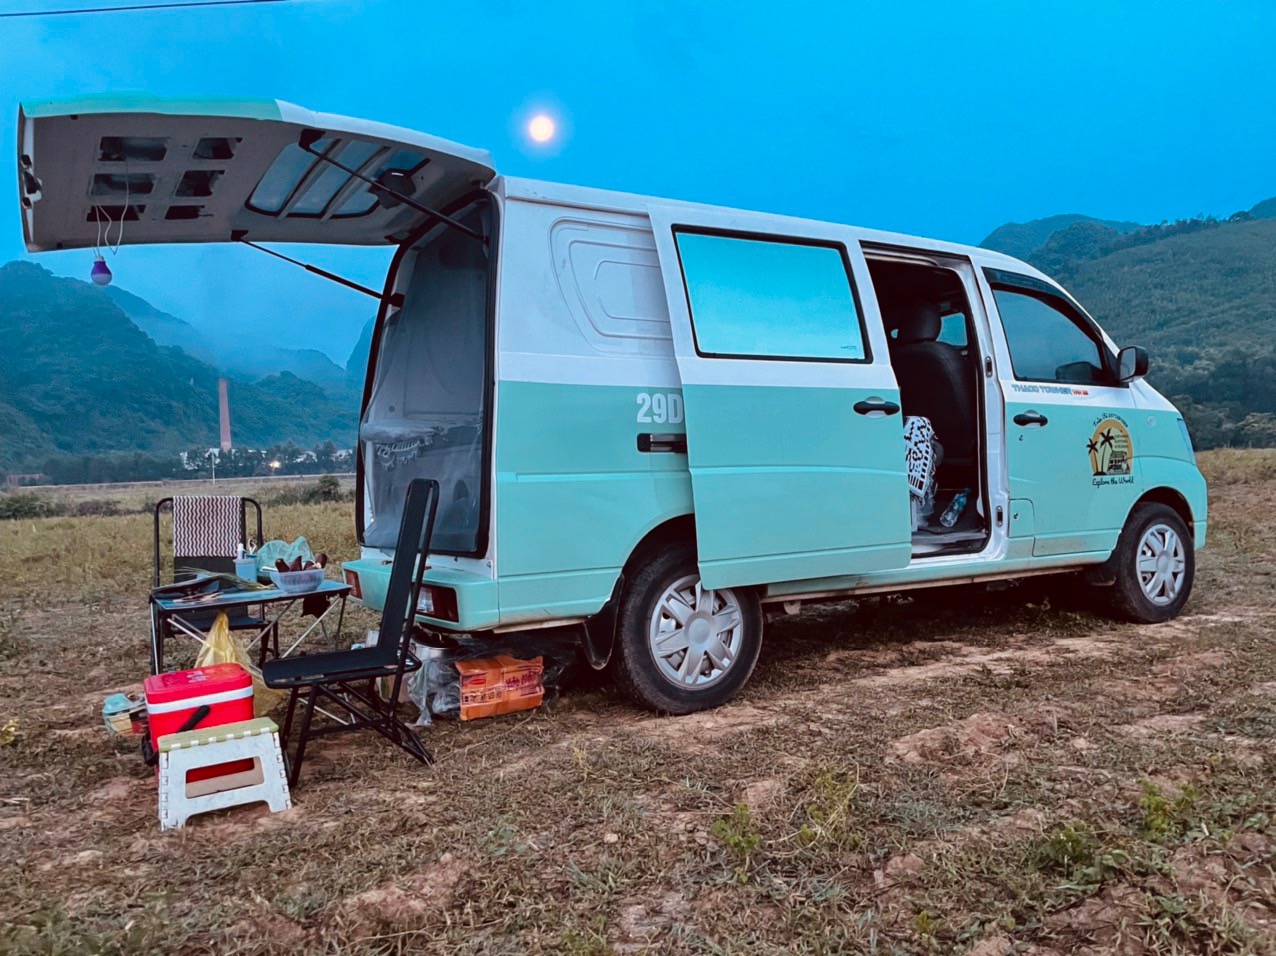 Bán Triton mua xe van THACO hơn 300 triệu độ camping chạy Bắc Nam hơn 18.000km, chủ xe trải lòng: 'Vui, tiện nhưng đi xa hơi cực' - Ảnh 11.